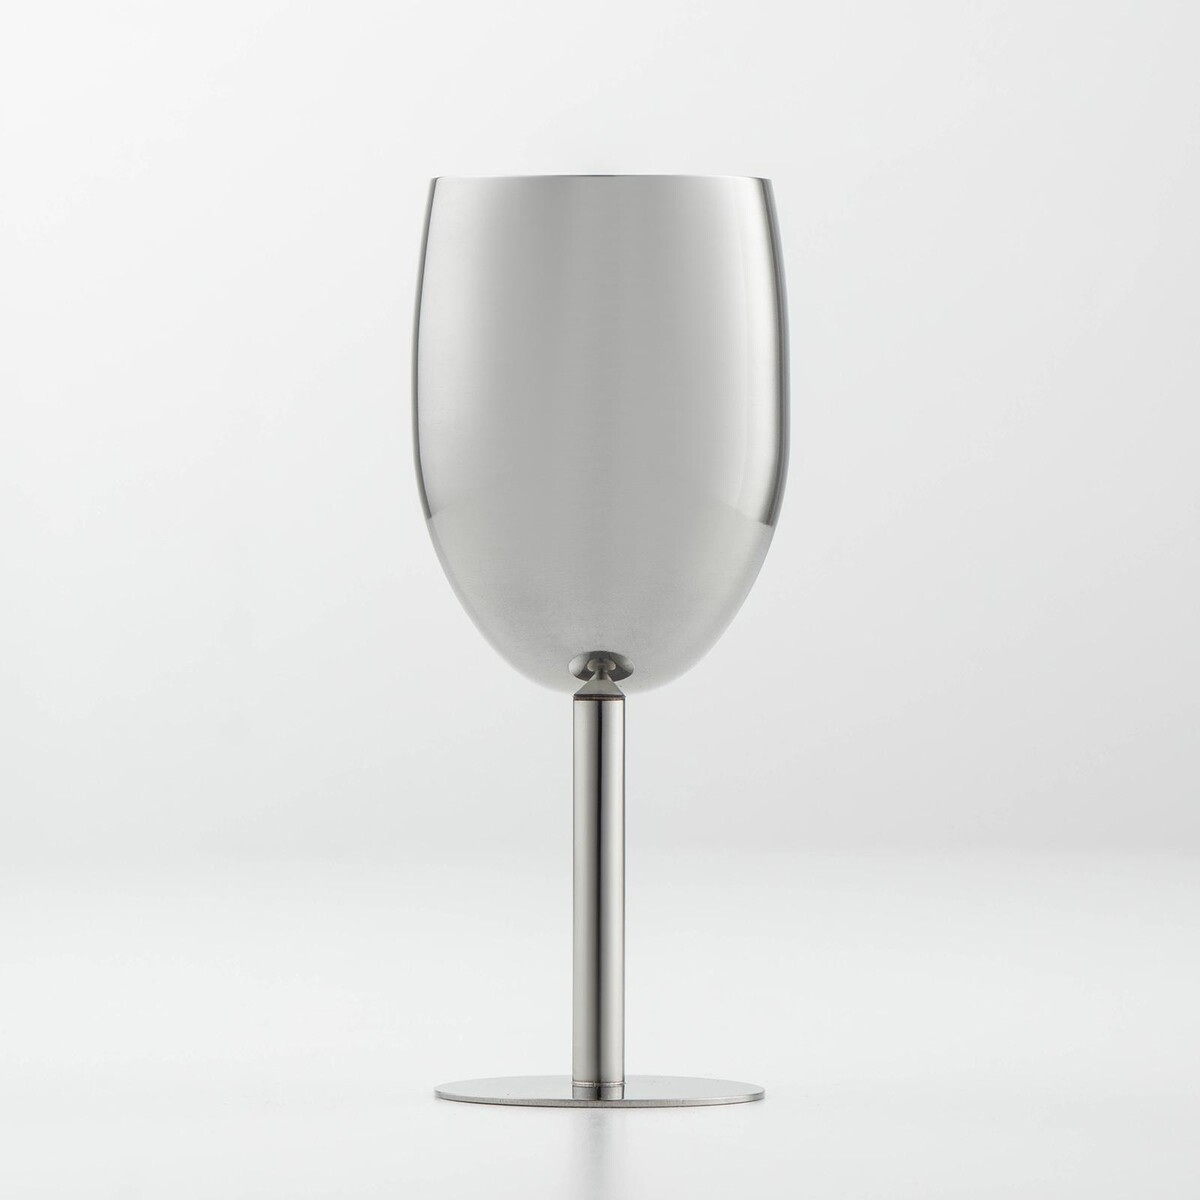 Бокал винный из нержавеющей стали для коктейлей, 17×7 см, цвет хромированный бокал для вина 630 мл стекло 6 шт pasabahce enoteca 44238b